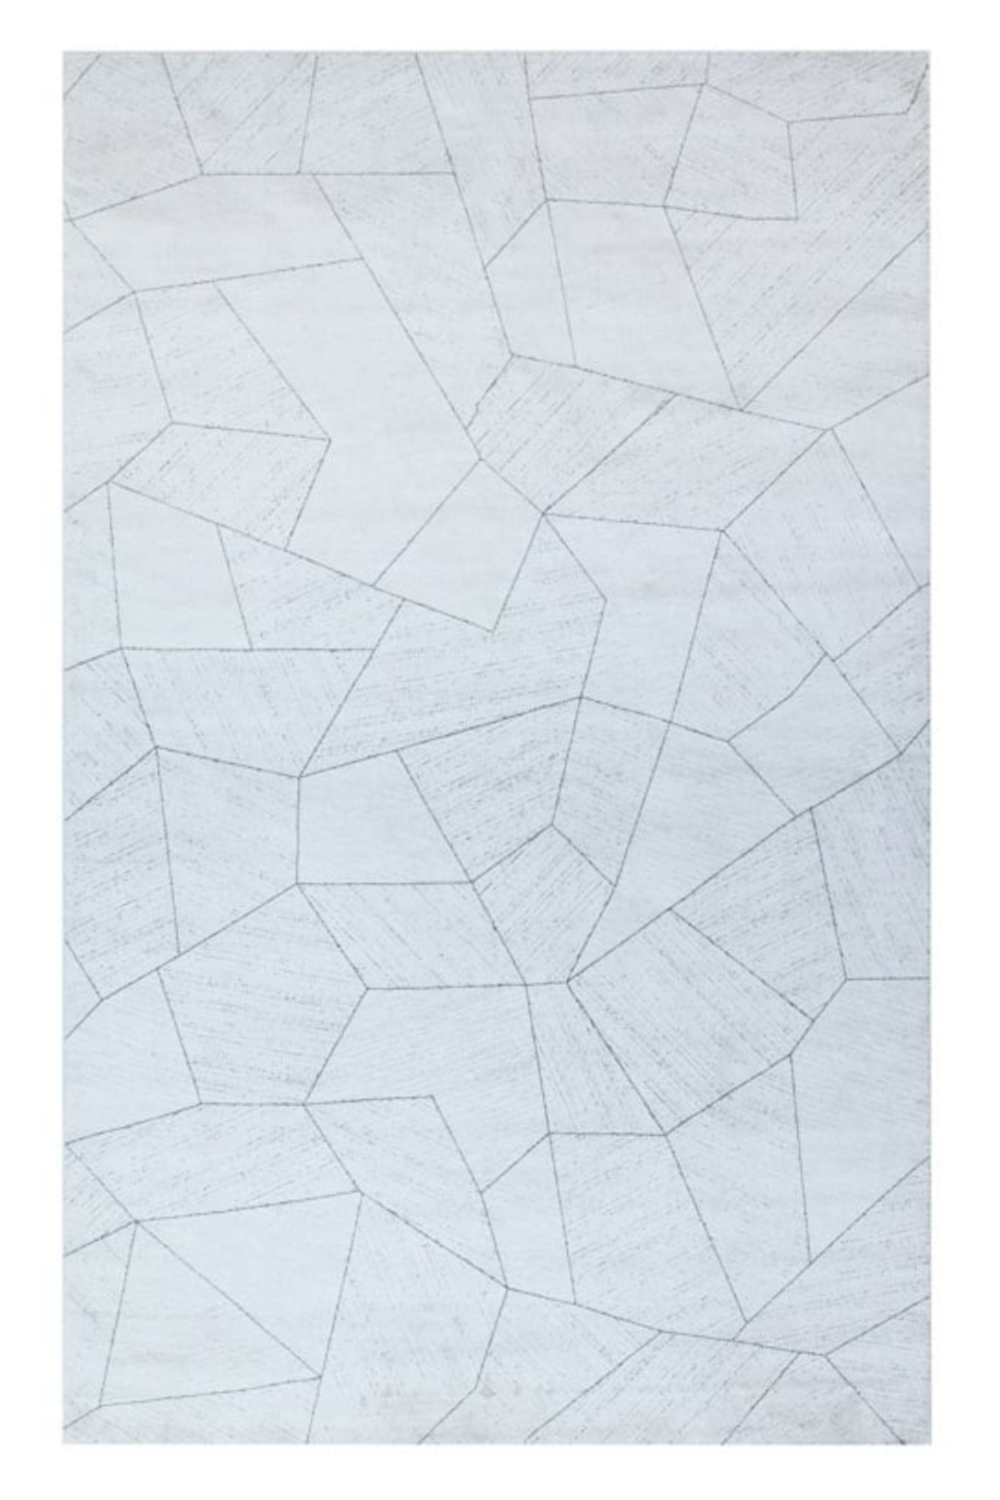 Beige Geometric Carpet 6'5" x 9'5" | OROA Deniz | Oroa.com